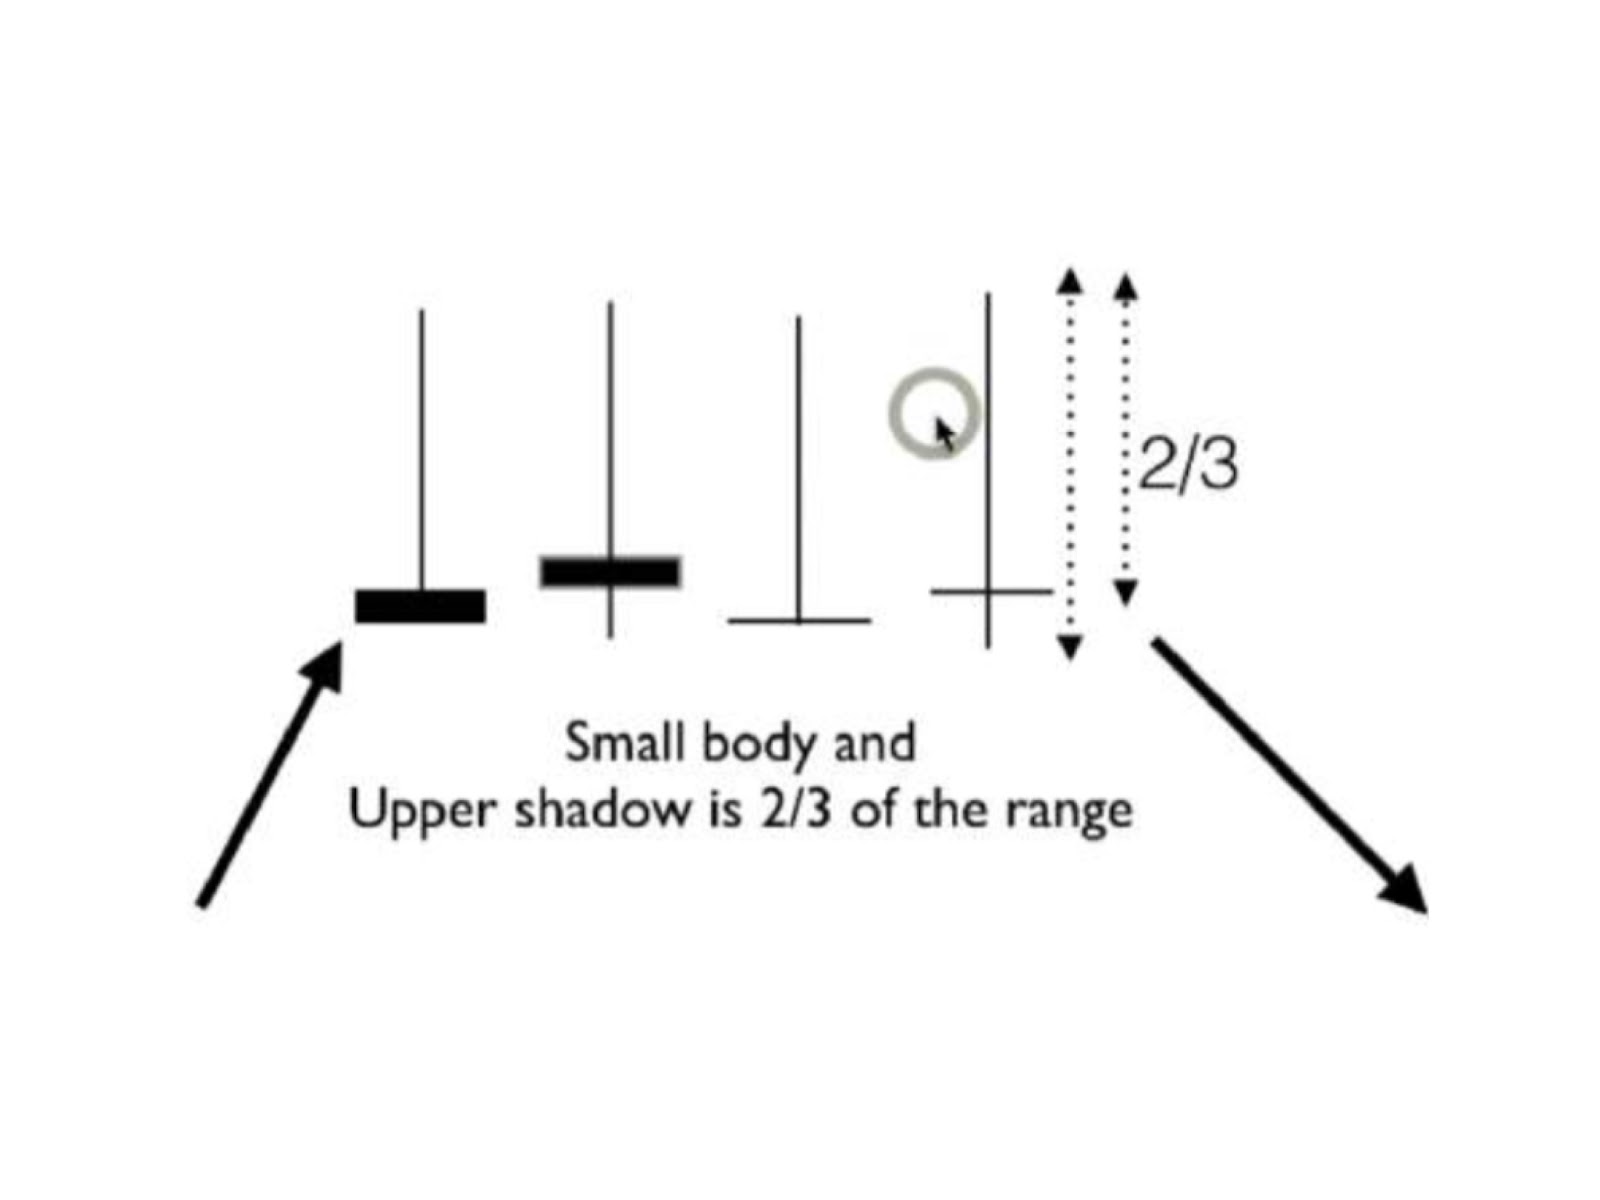 bearish pin bar image on a btc candlestick chart